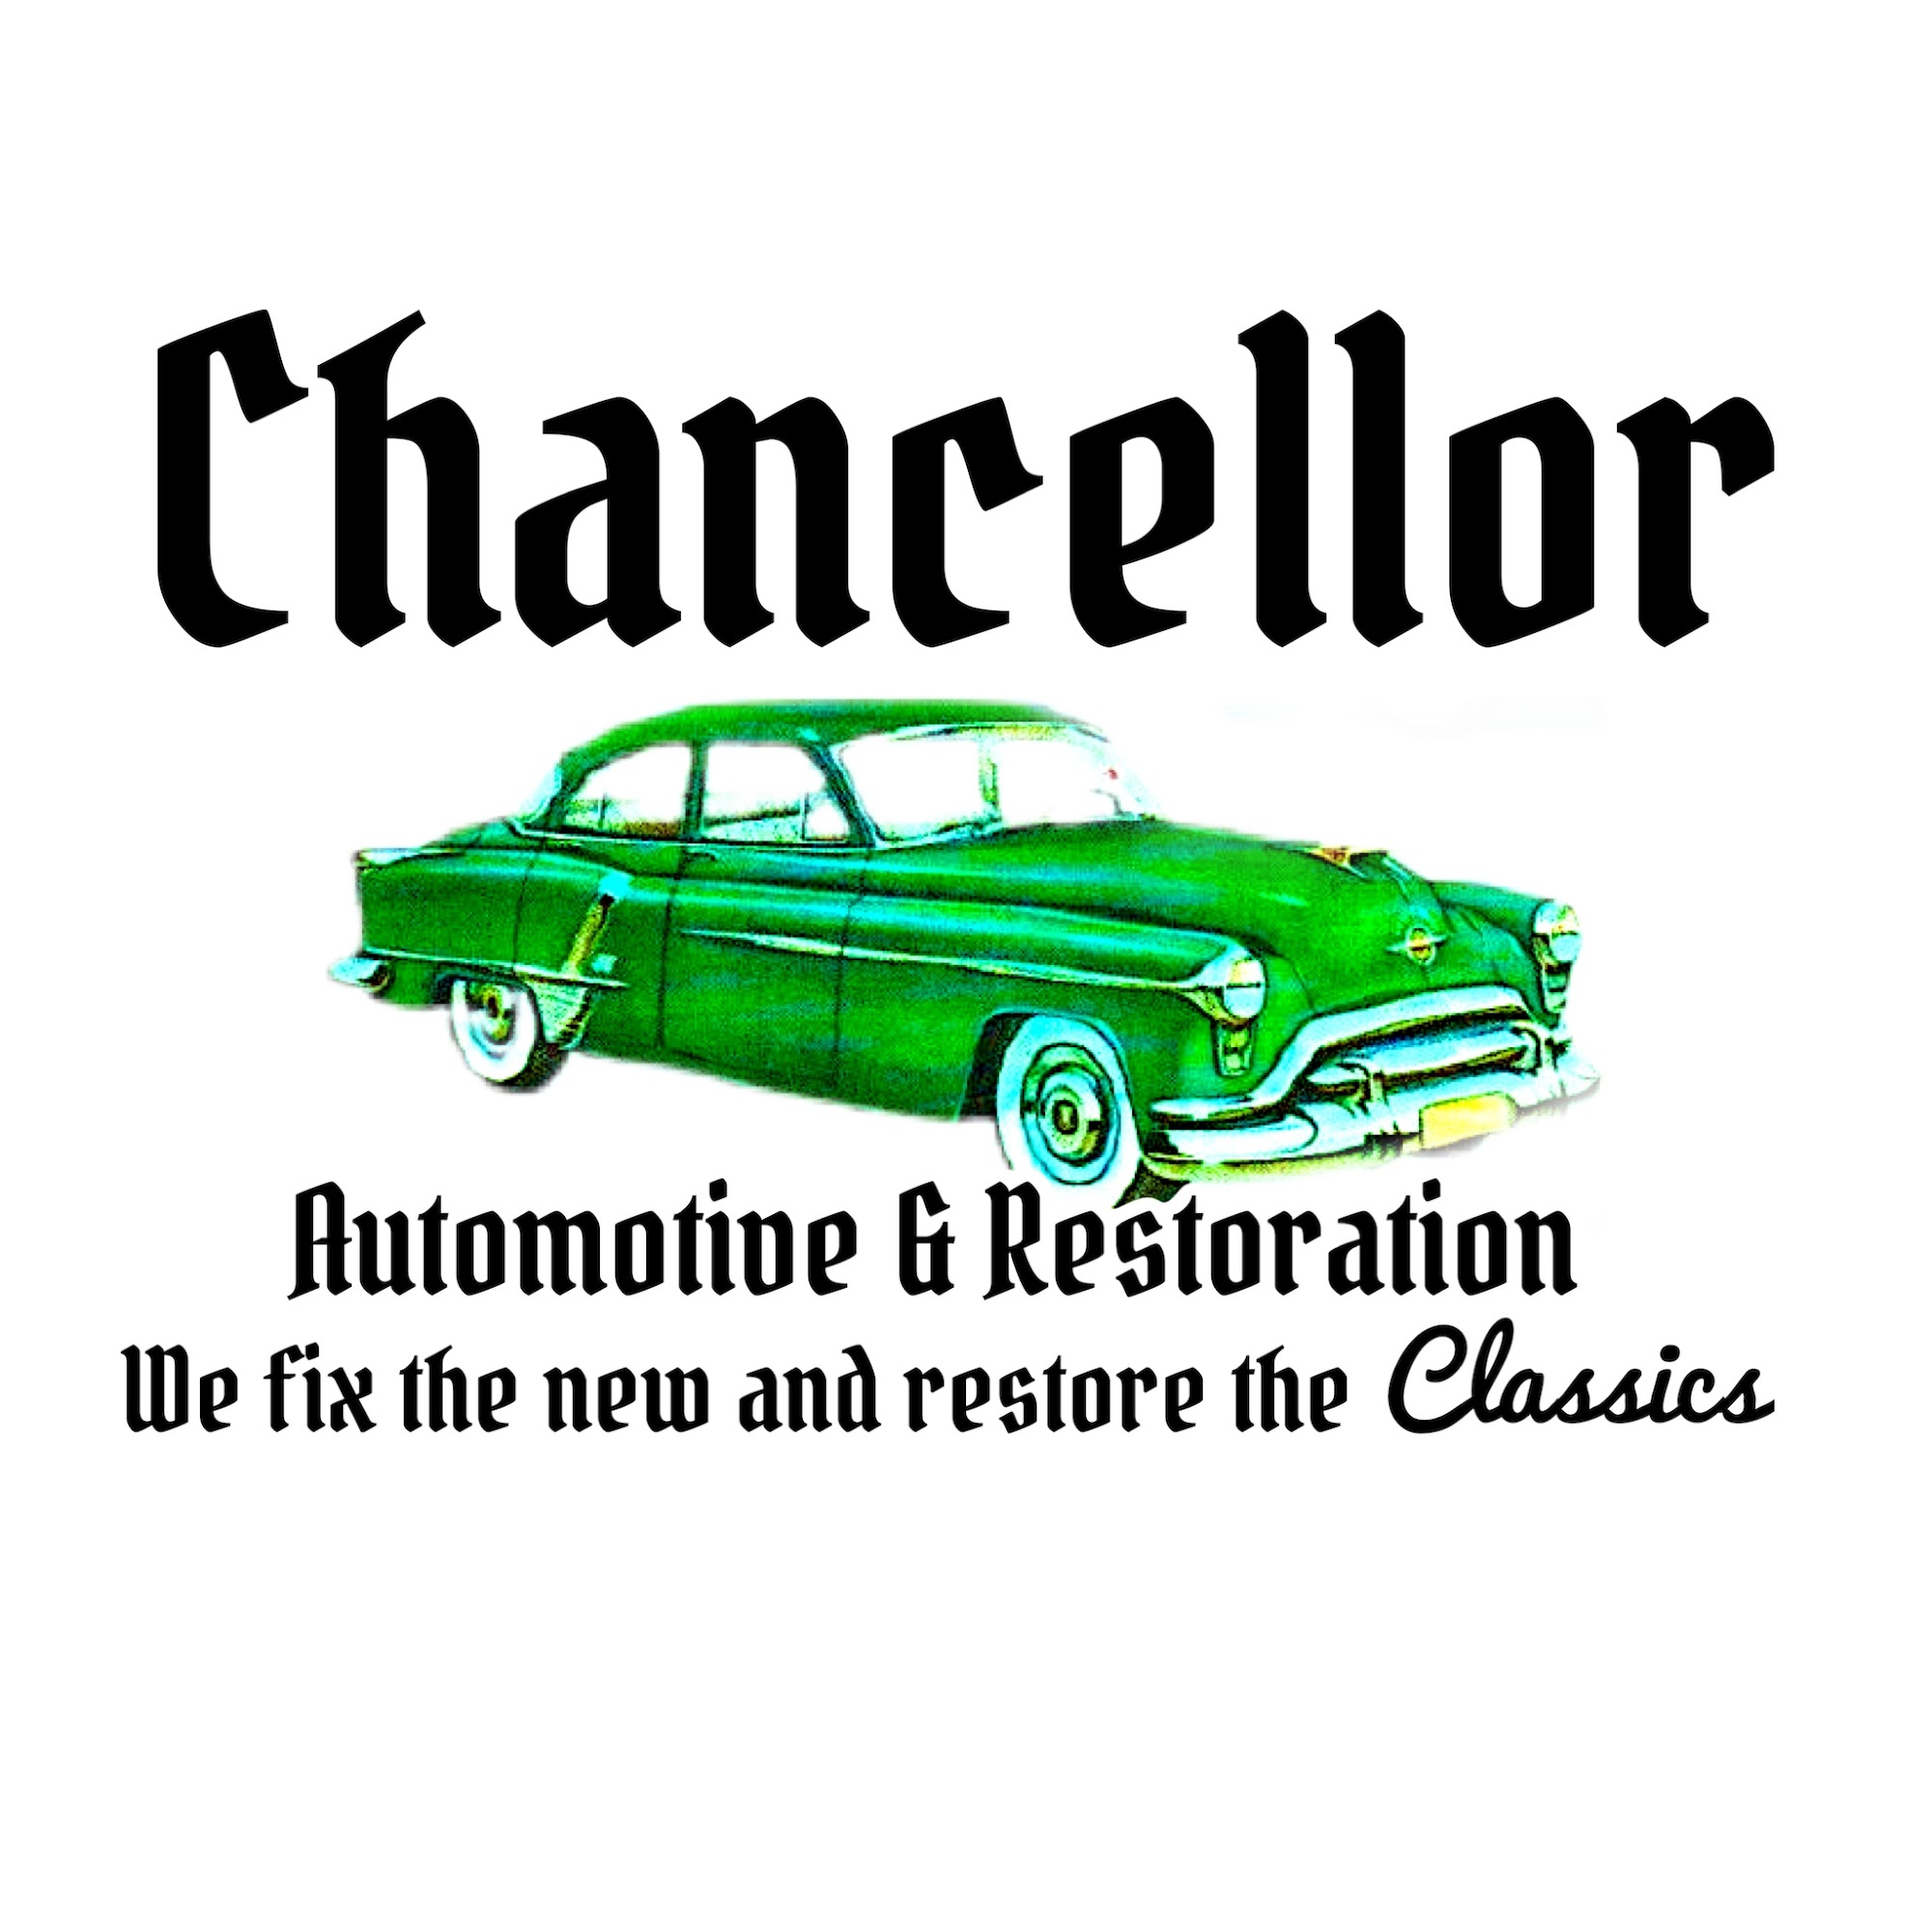 Chancellor Automotive and Restoration